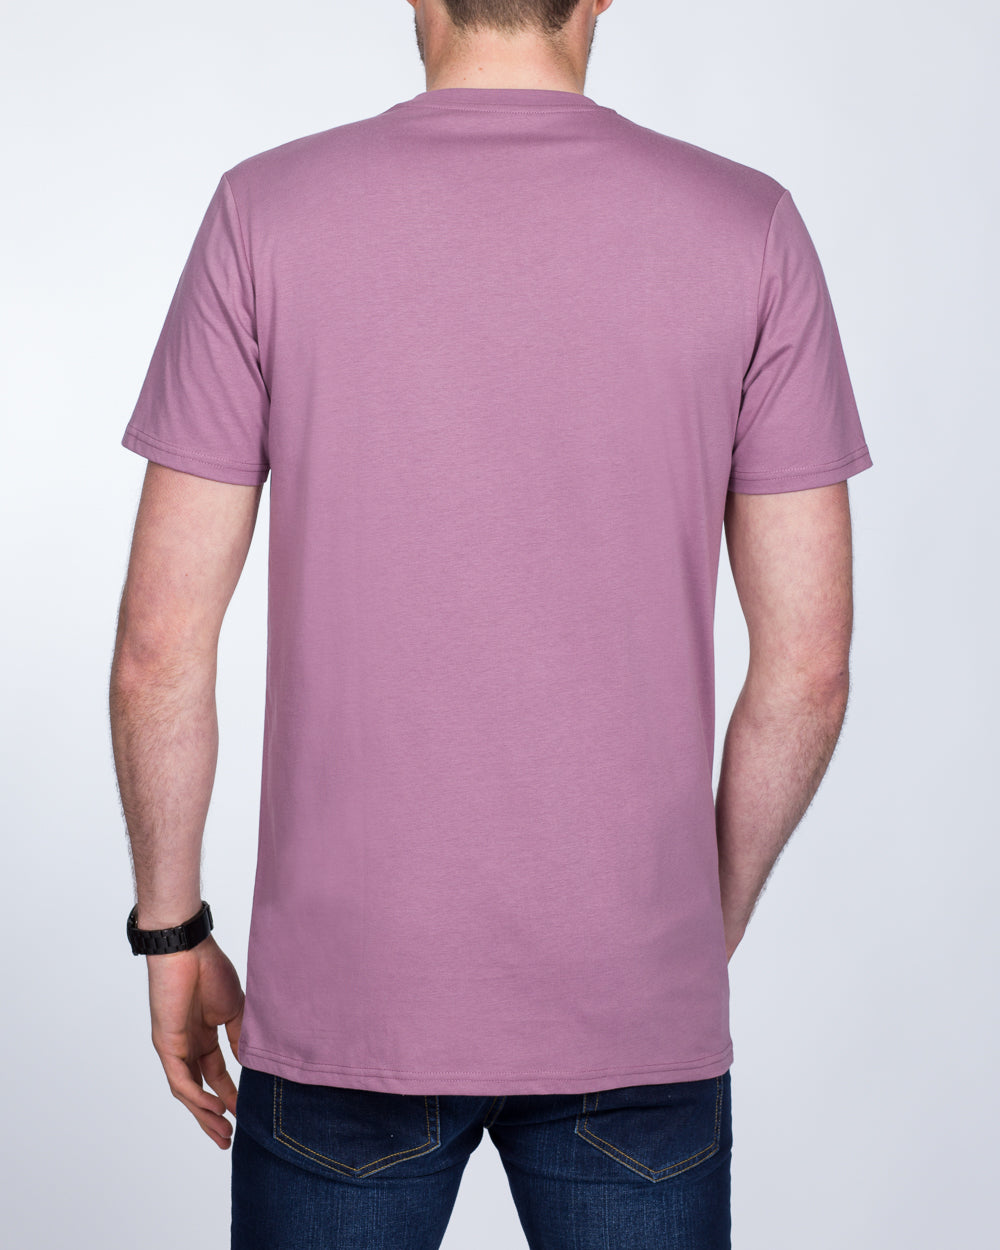 Girav Sydney Tall T-Shirt (purple grape)